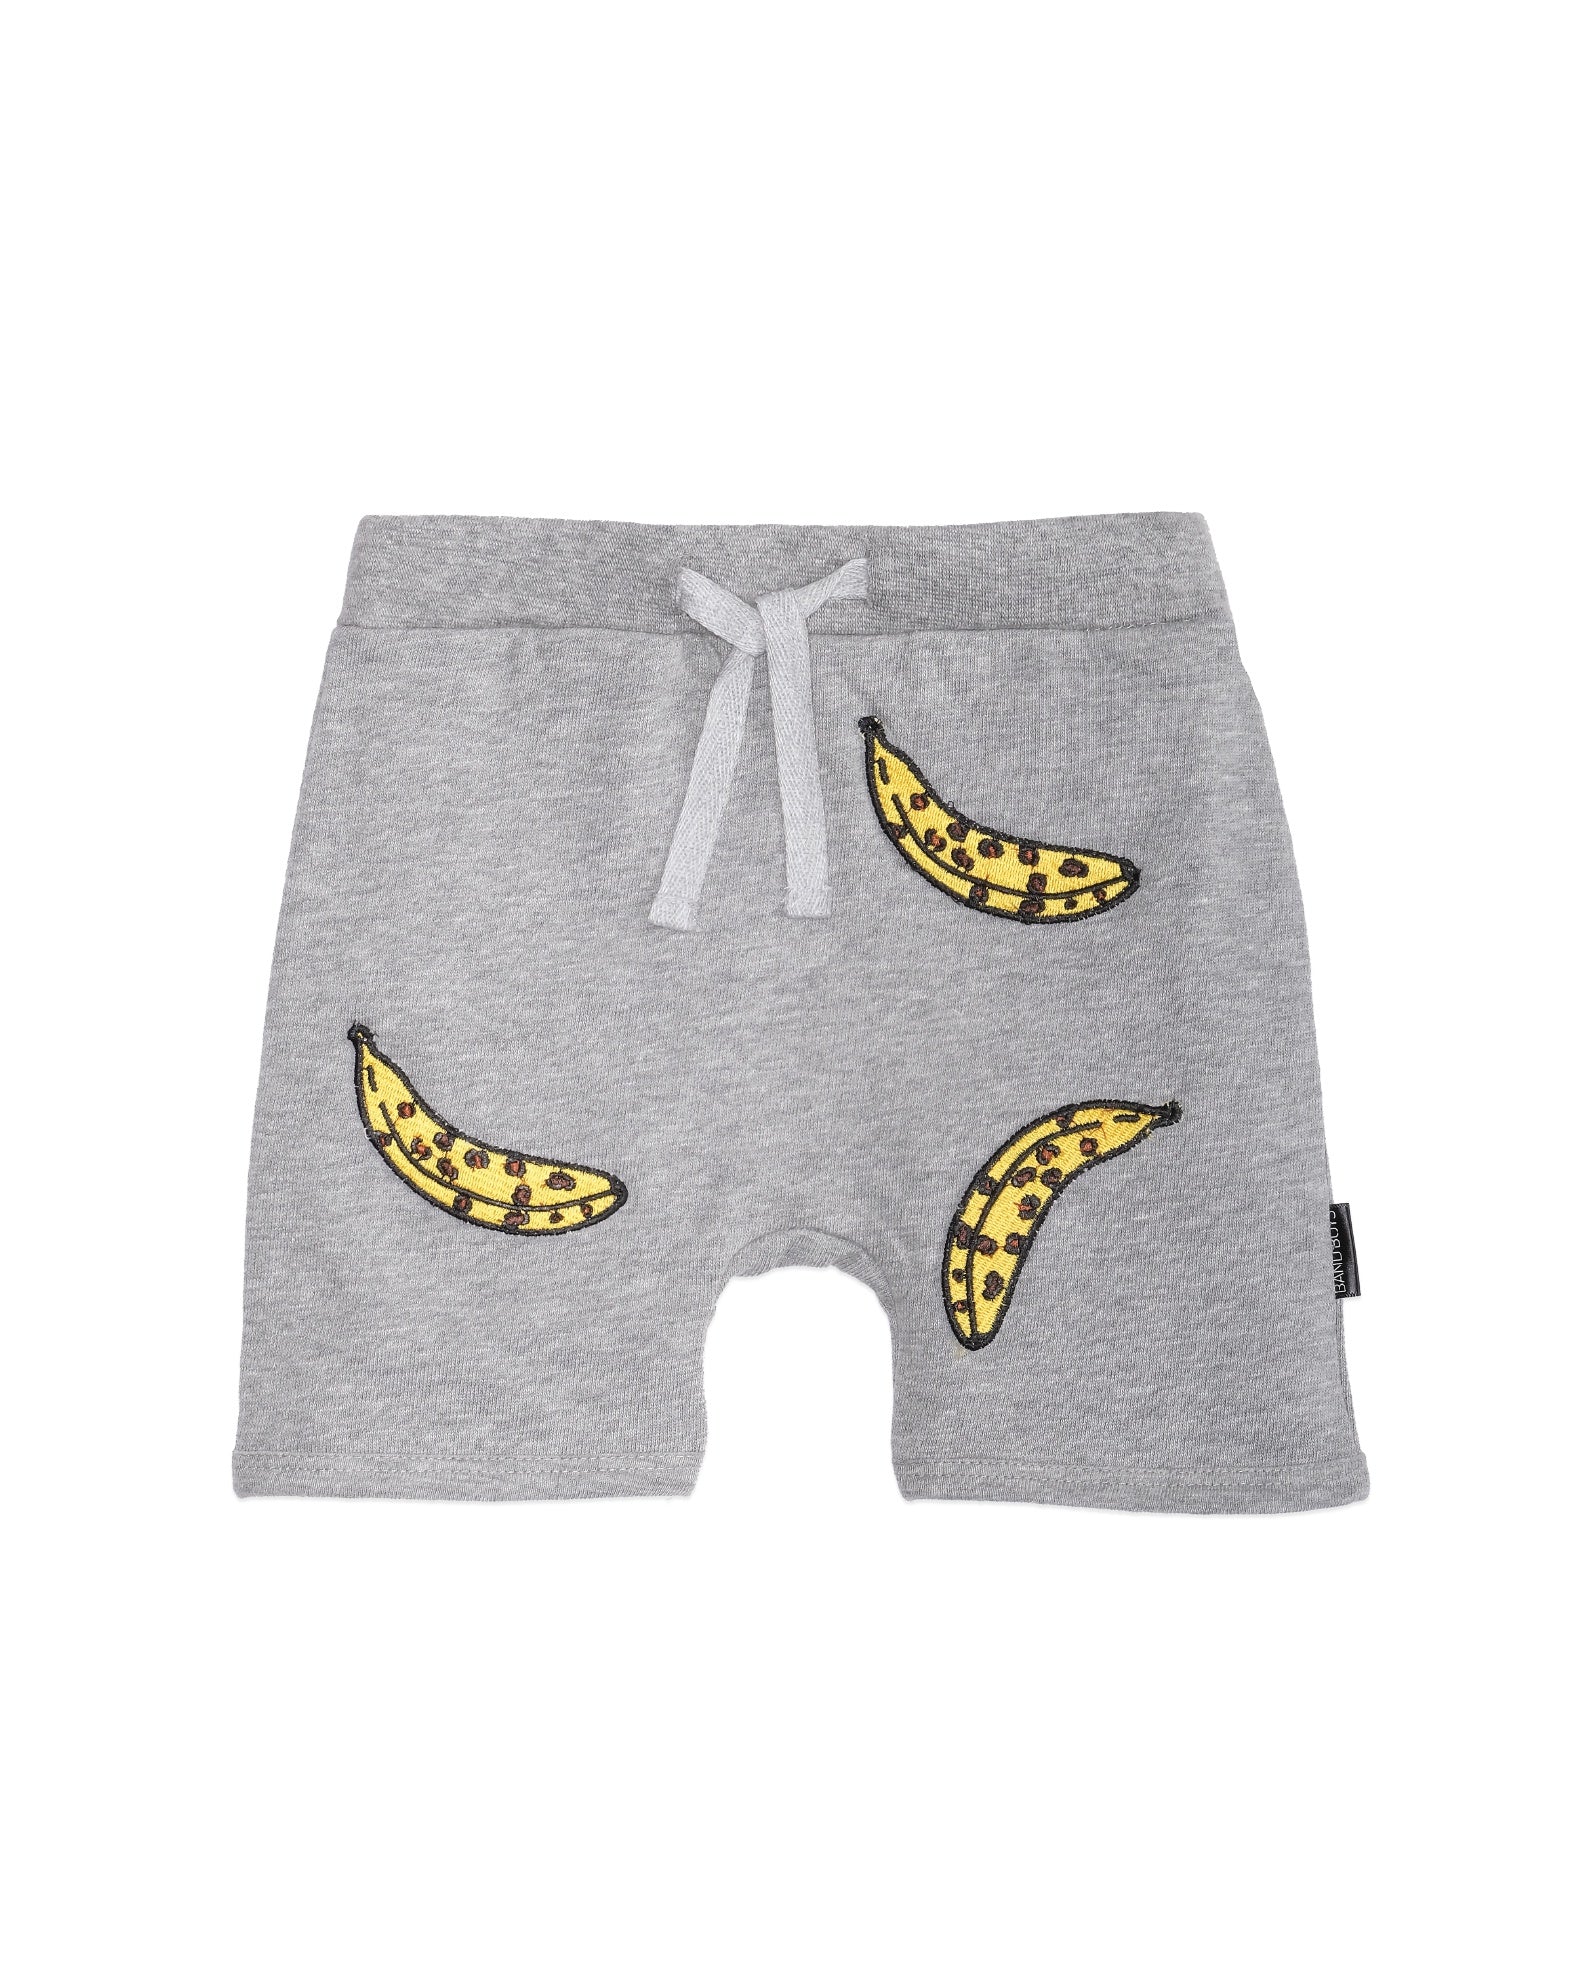 Band of Boys - Organic Baby Shorts - Leopard Banana - Grey Marle